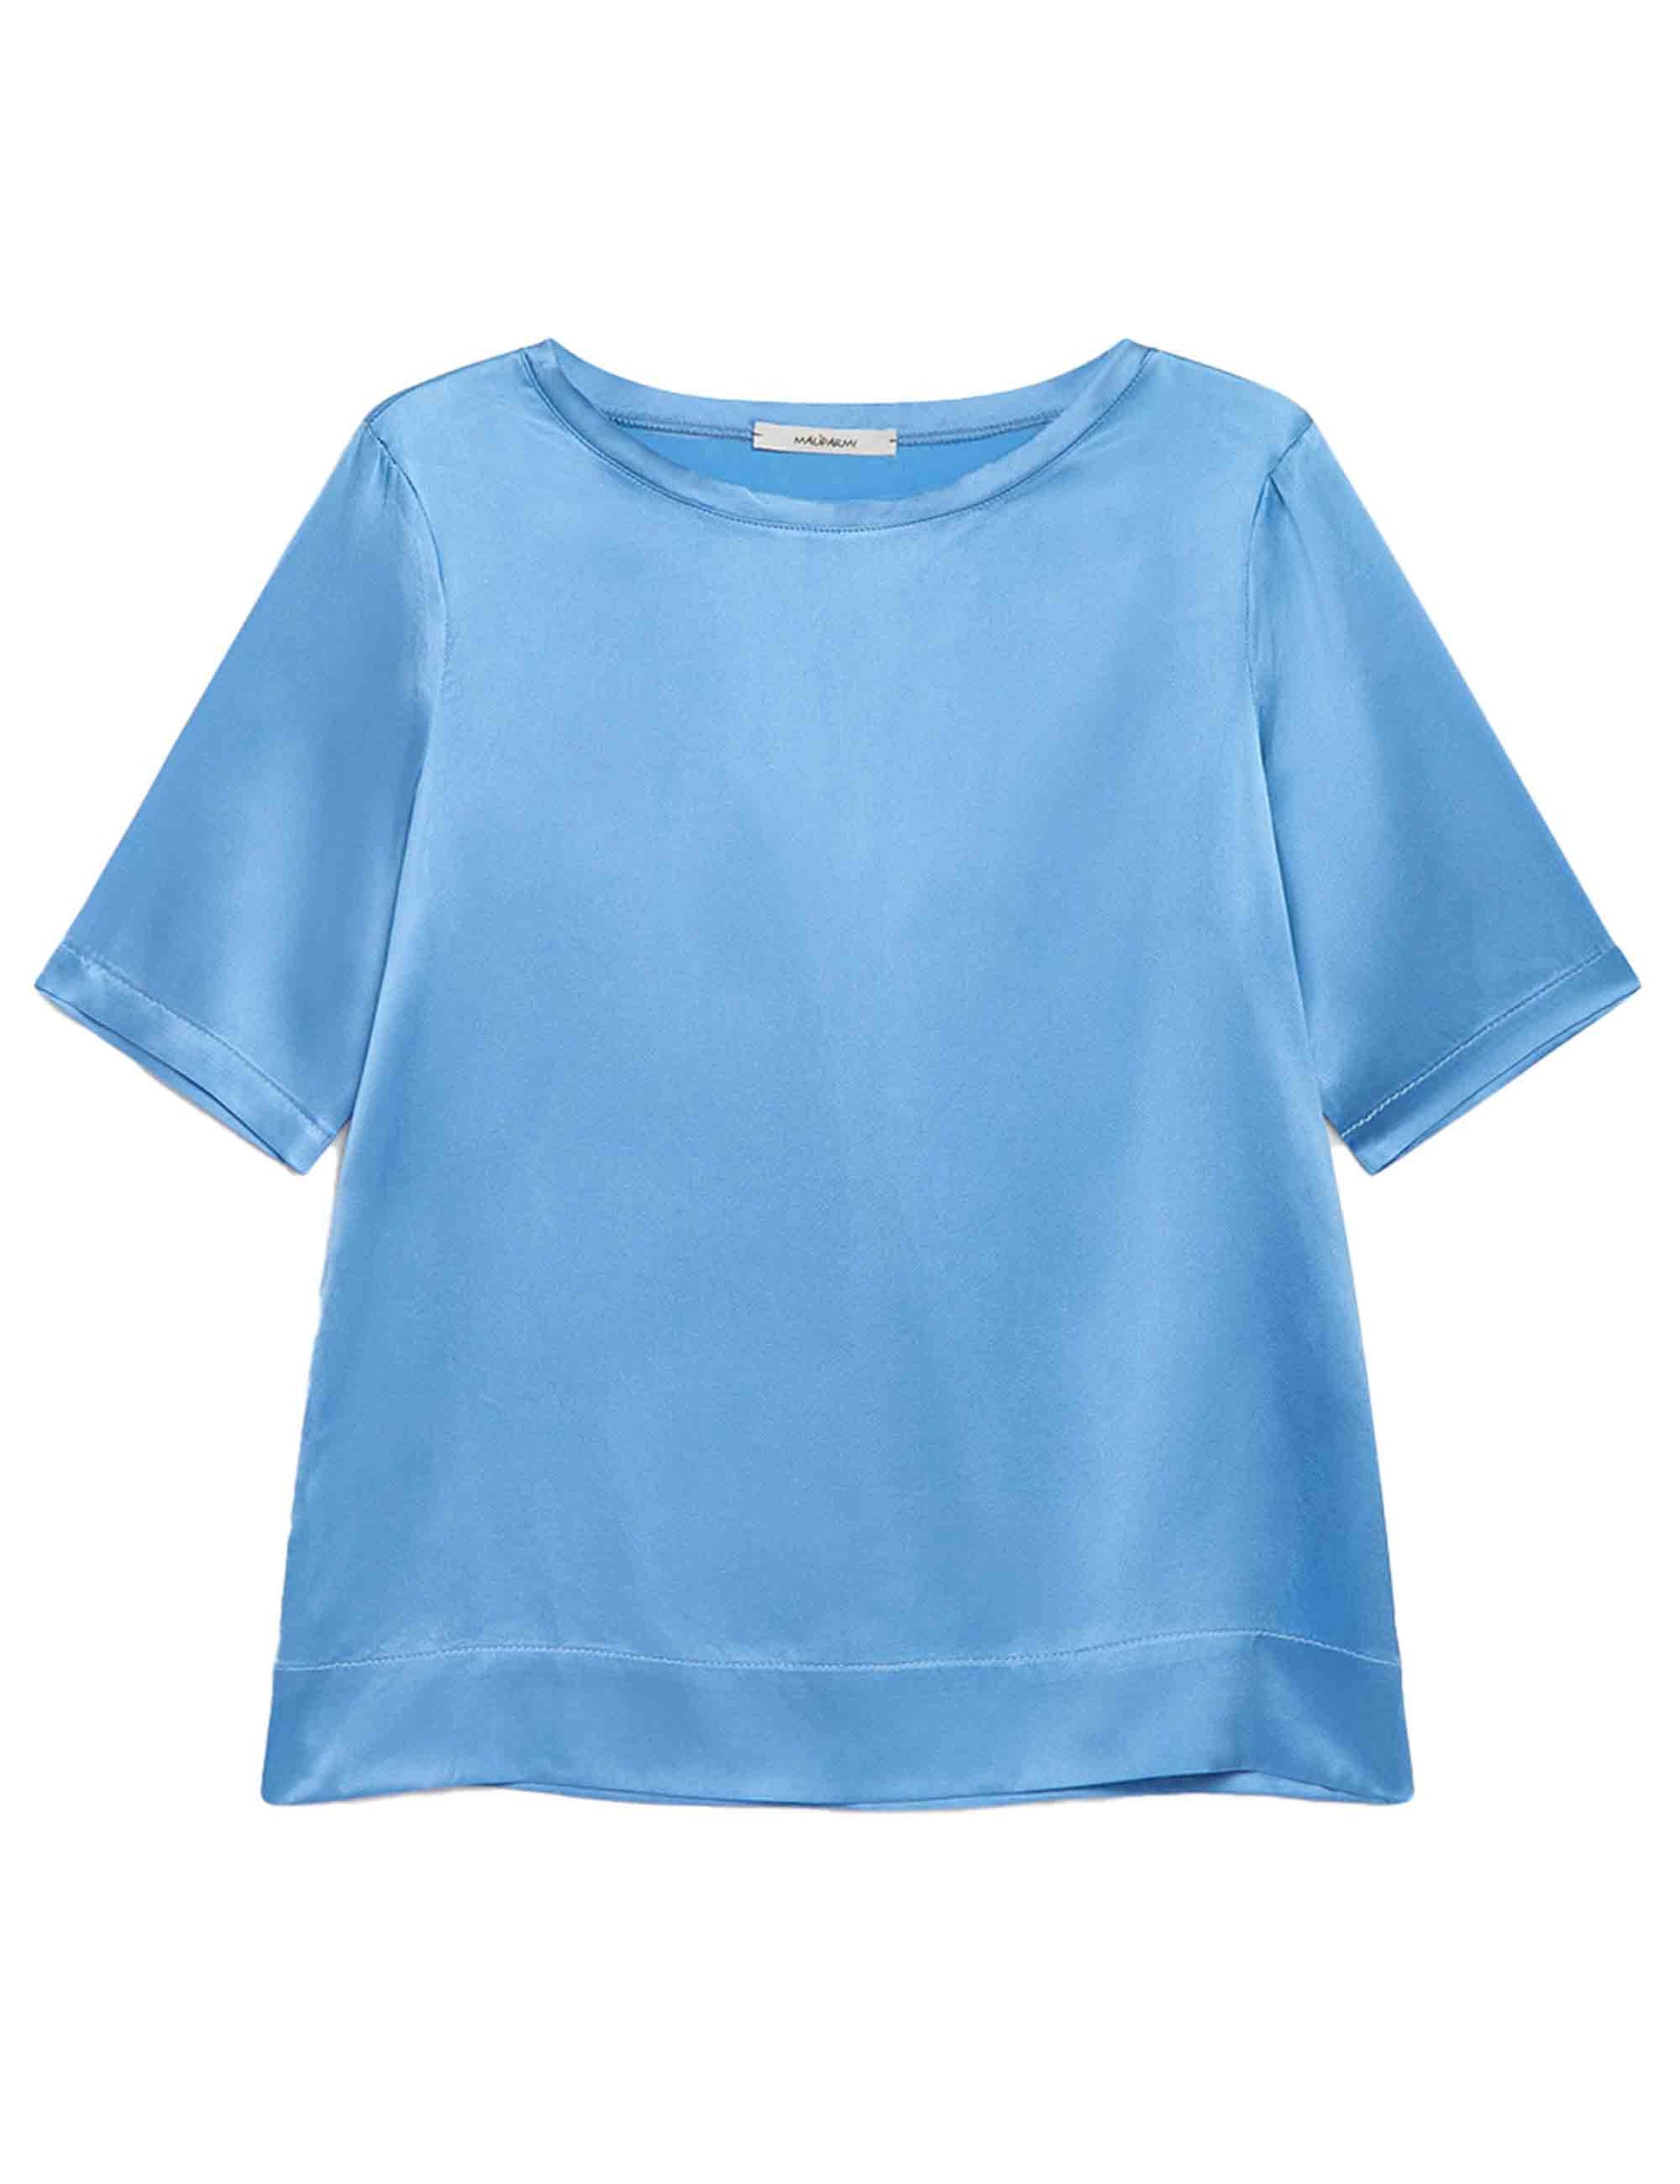 Silk Satin women's t-shirt in light blue silk